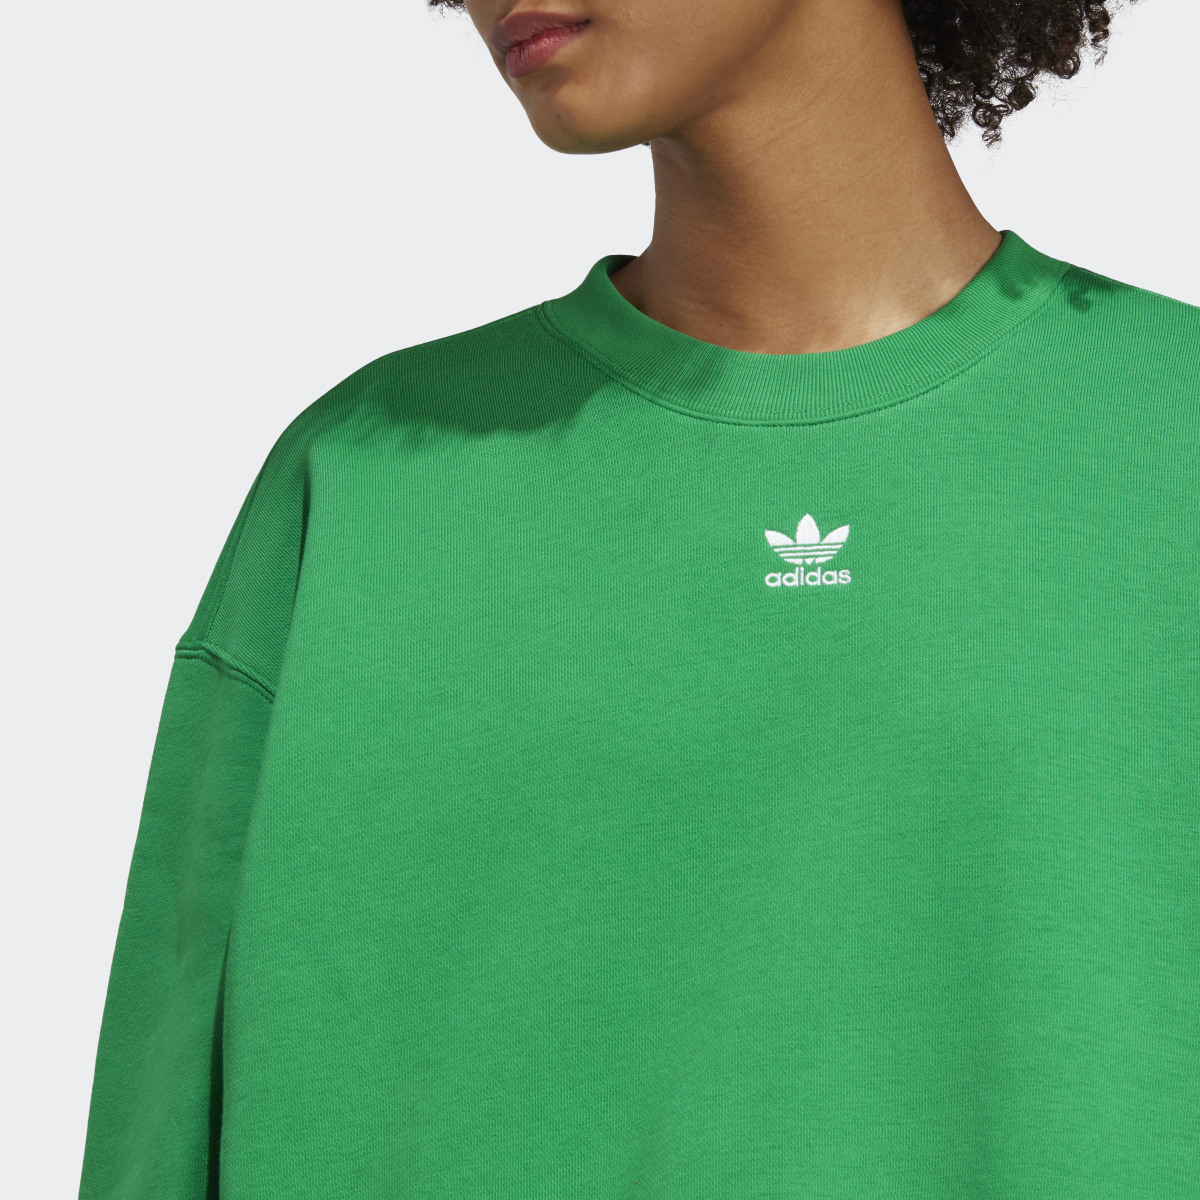 Adidas Sweatshirt. 6